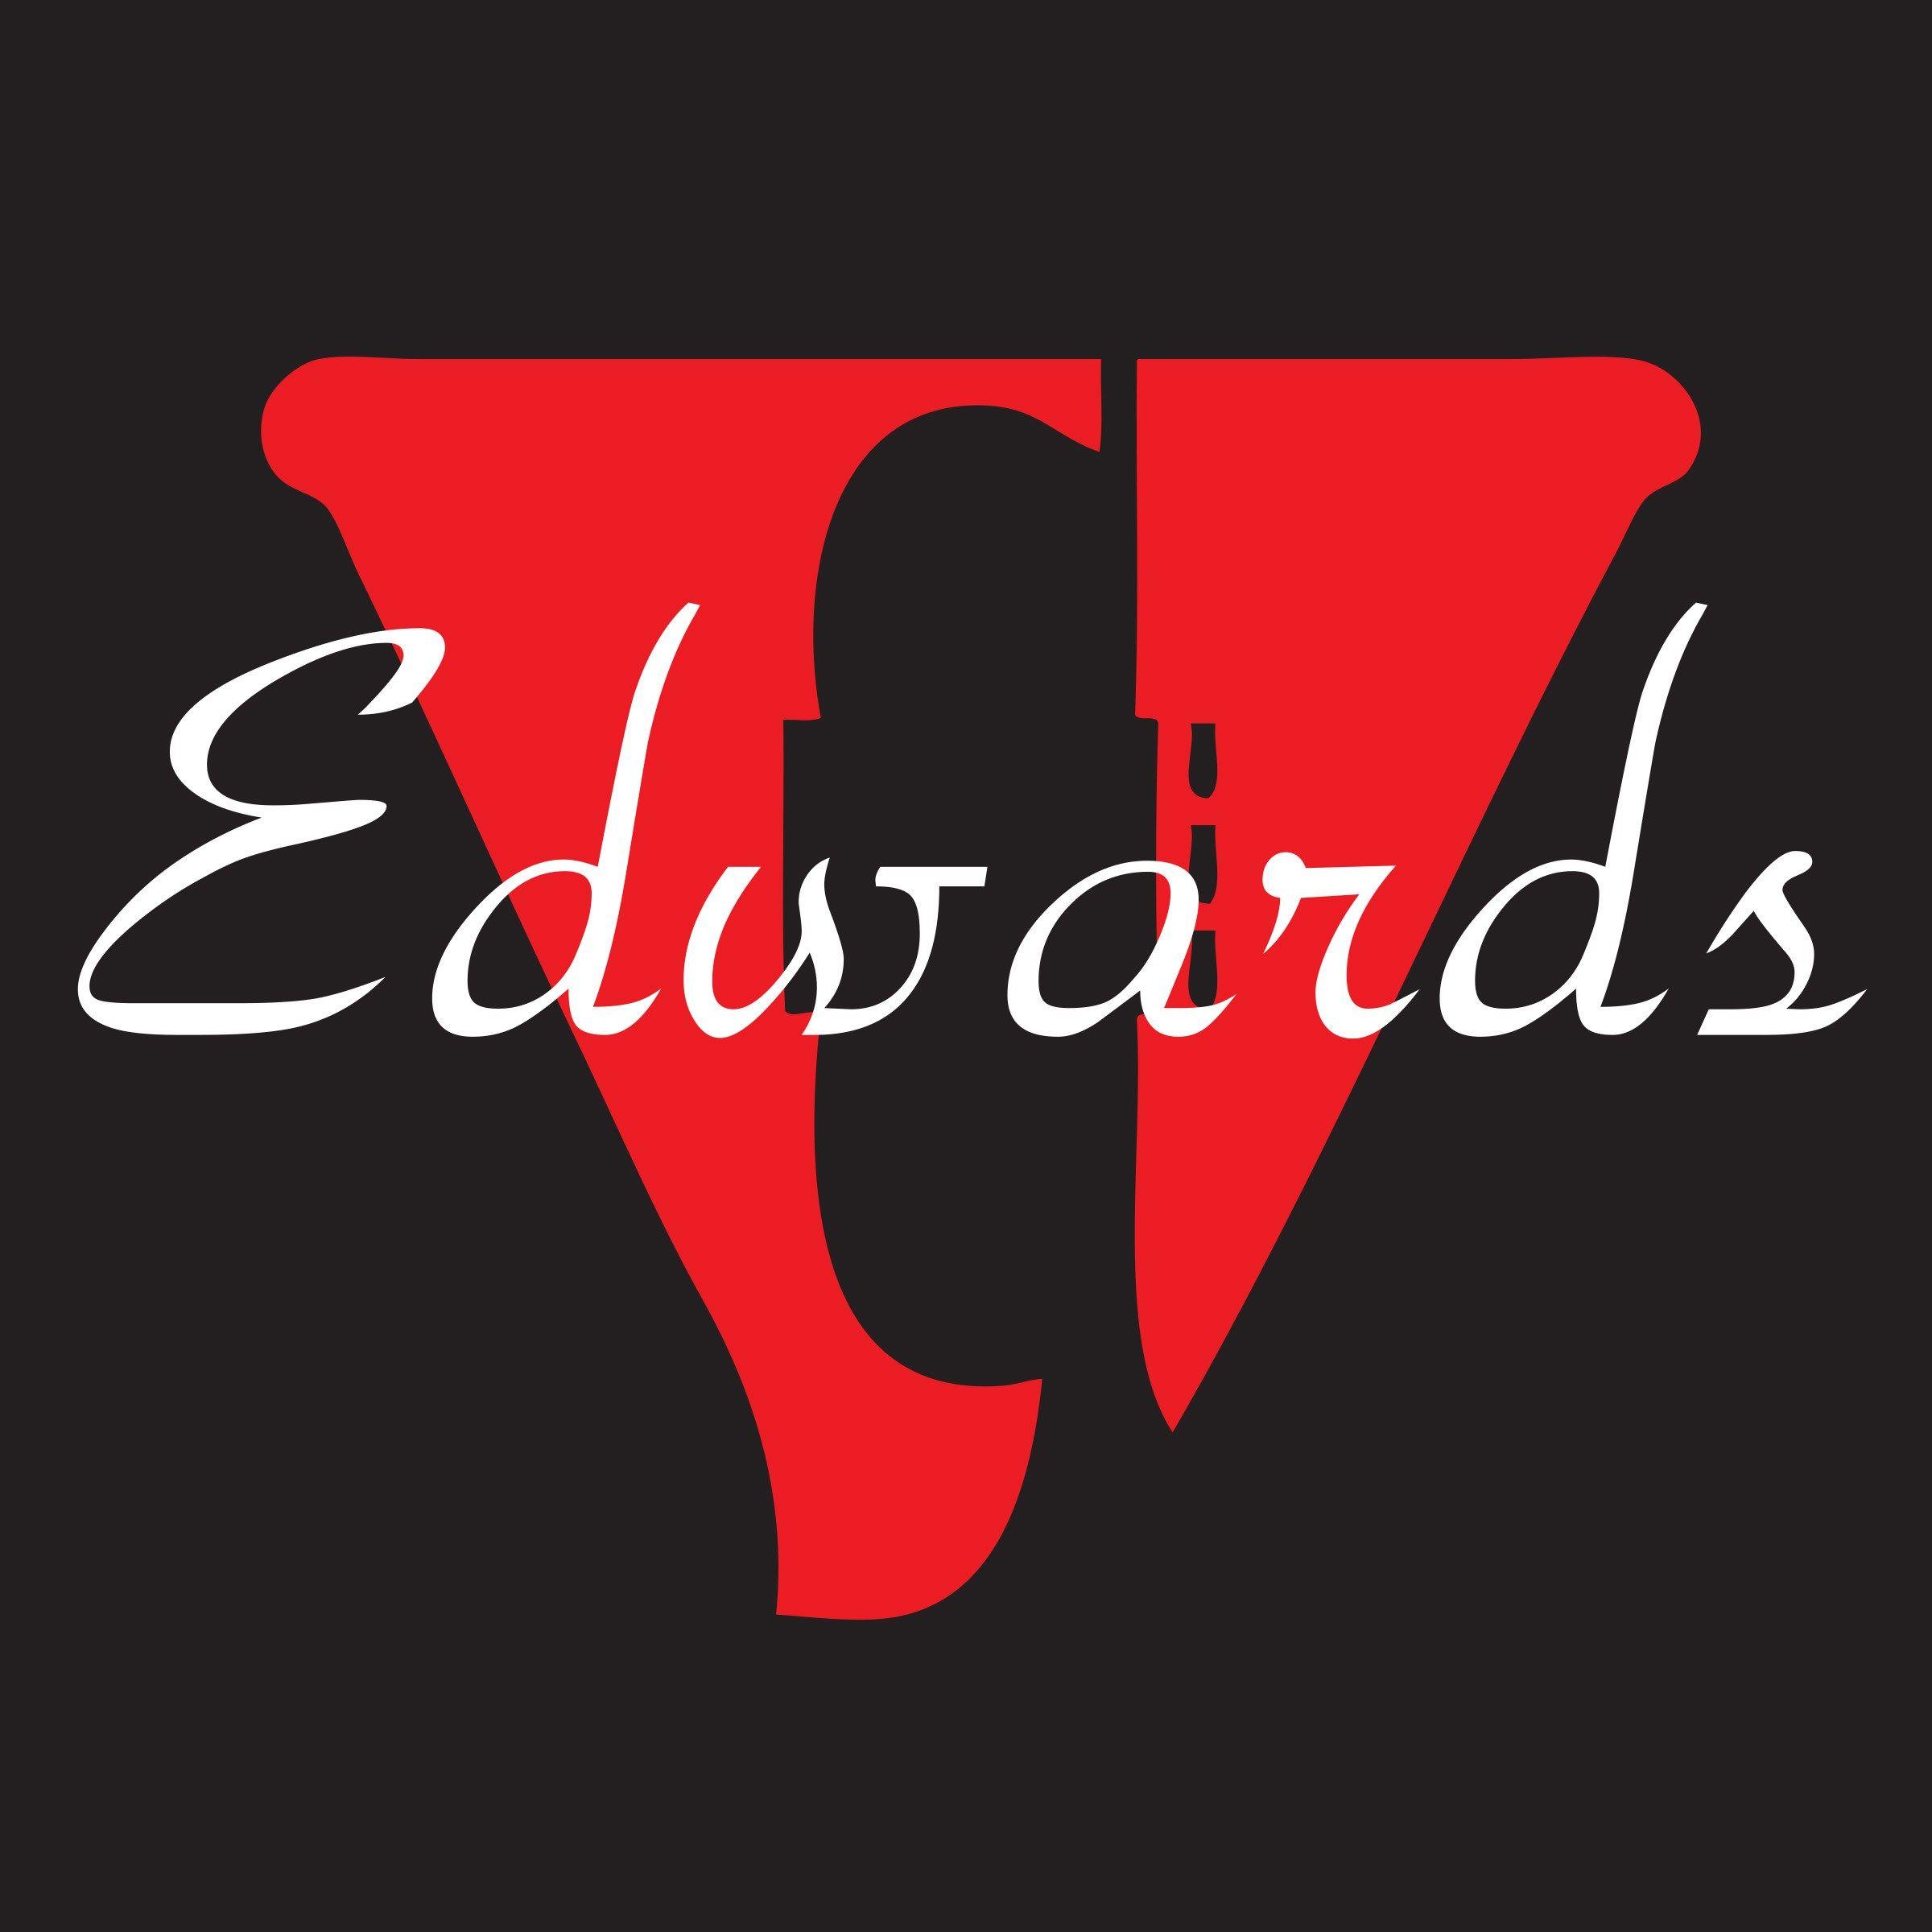 Edwards Logo - Edwards Logo 4×4 Black